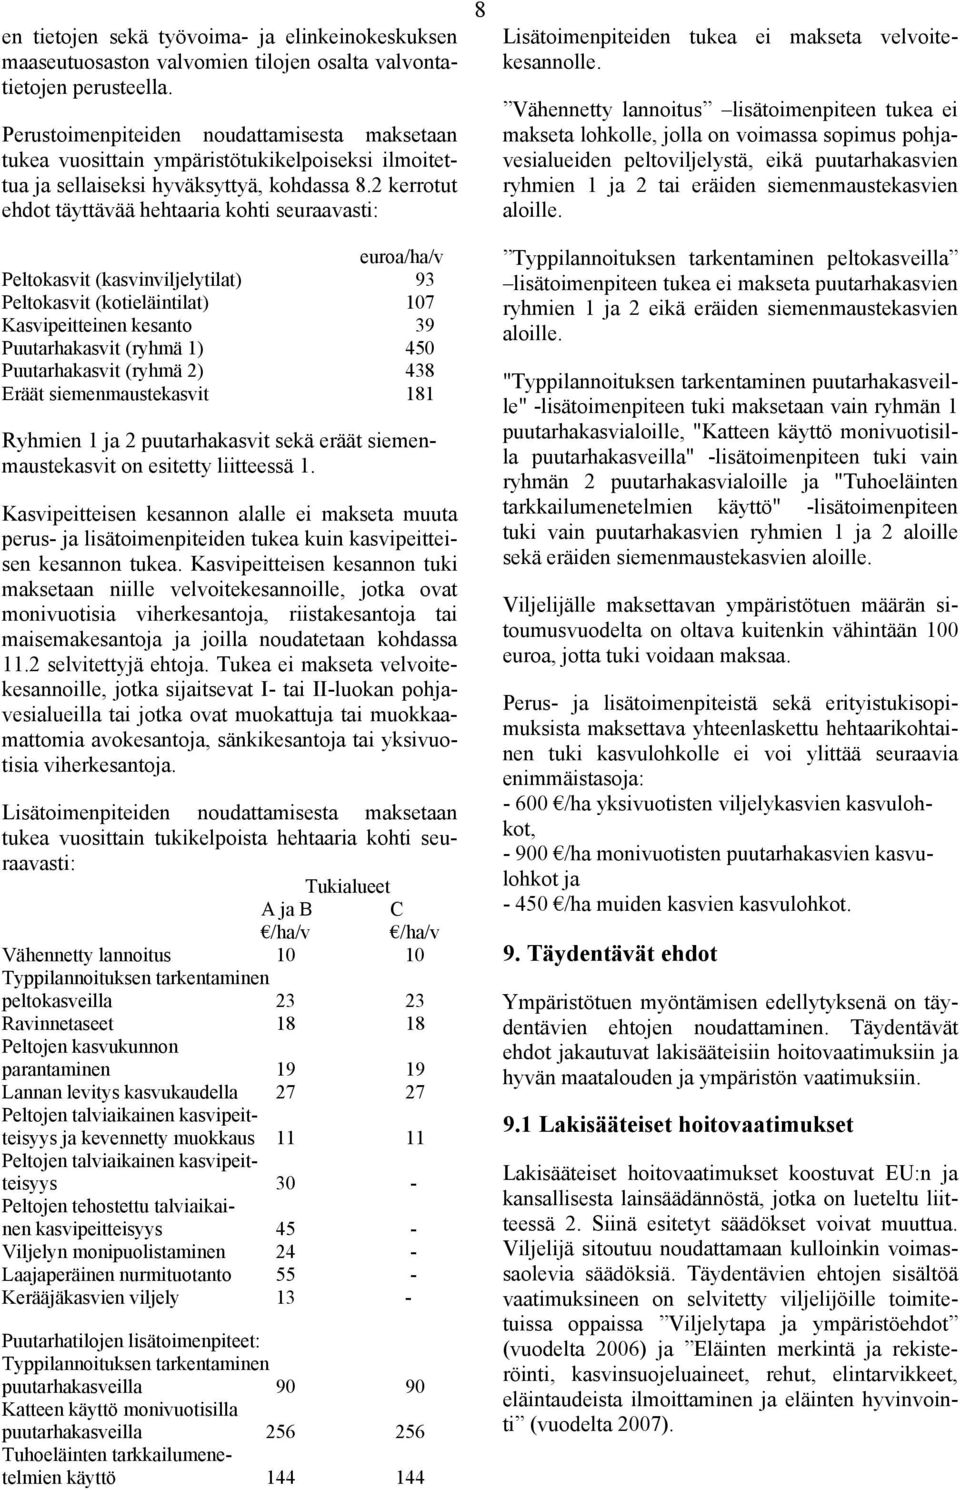 2 kerrotut ehdot täyttävää hehtaaria kohti seuraavasti: euroa/ha/v Peltokasvit (kasvinviljelytilat) 93 Peltokasvit (kotieläintilat) 107 Kasvipeitteinen kesanto 39 Puutarhakasvit (ryhmä 1) 450